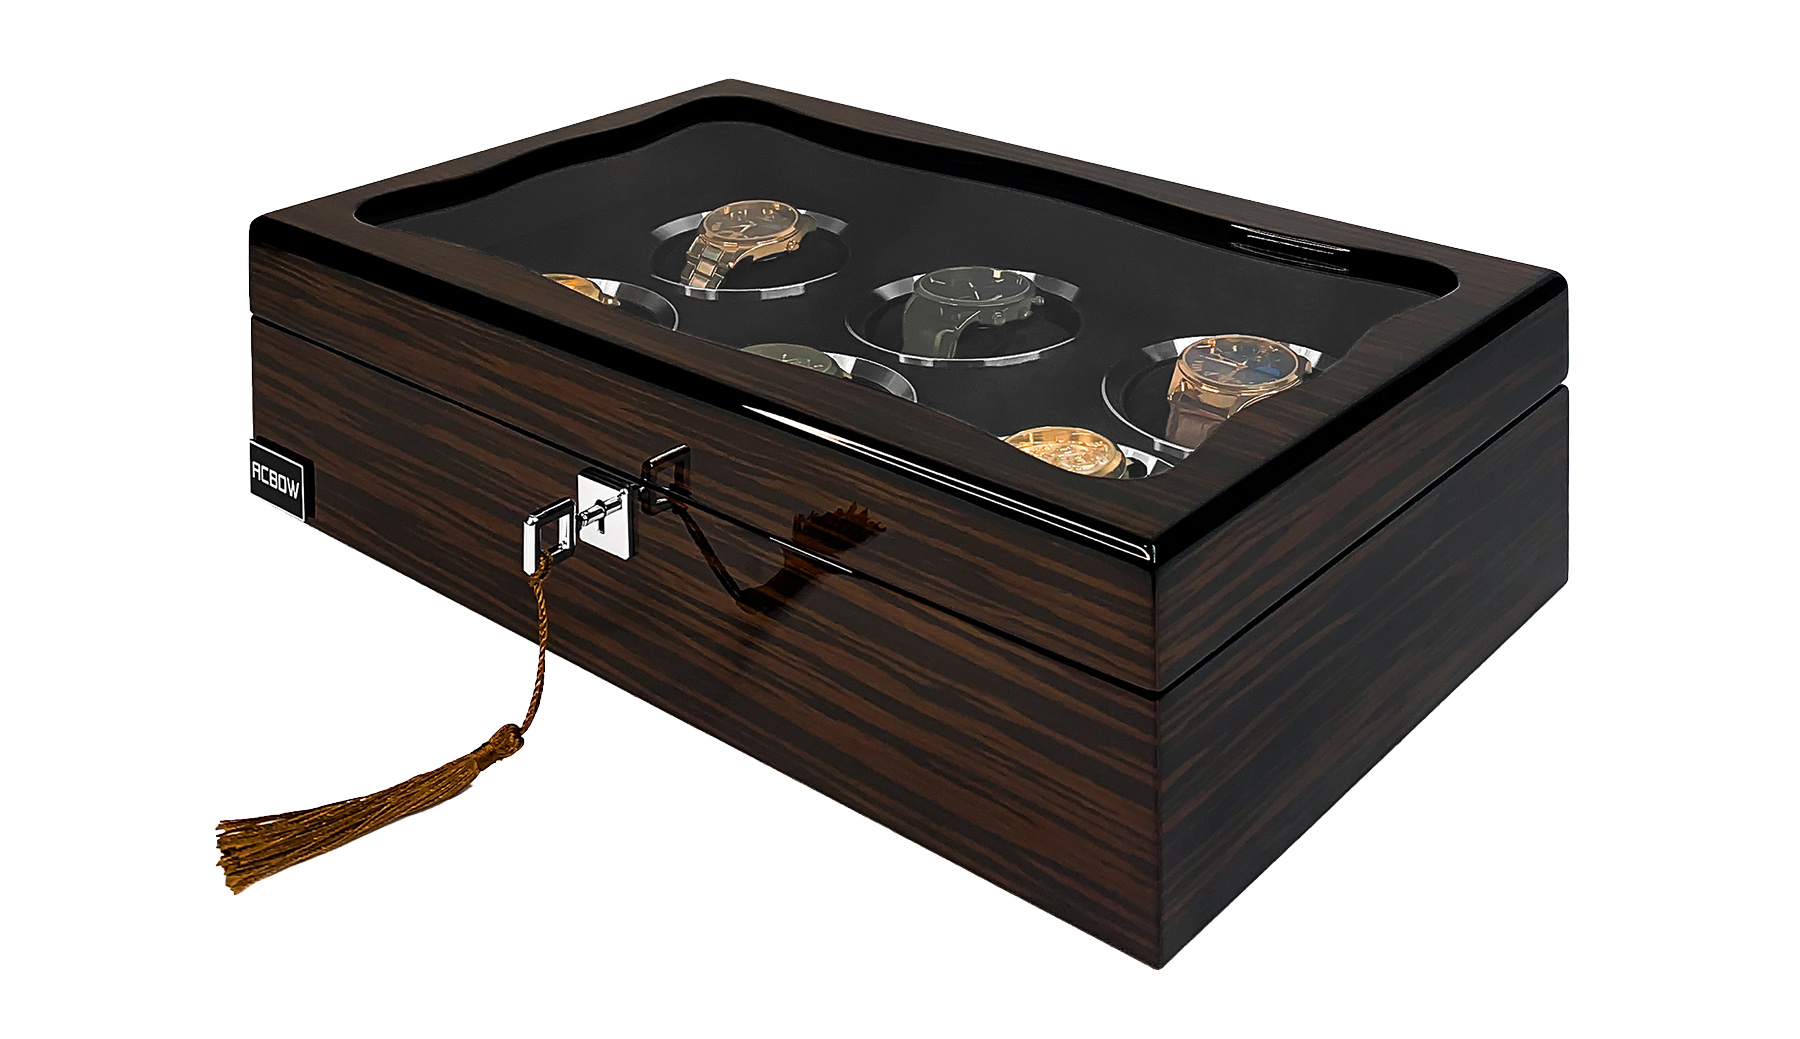 Hộp đựng đồng hồ ACBOW cao cấp Prenium 6 ngăn vỏ gỗ phủ Piano màu EBONY sang trọng